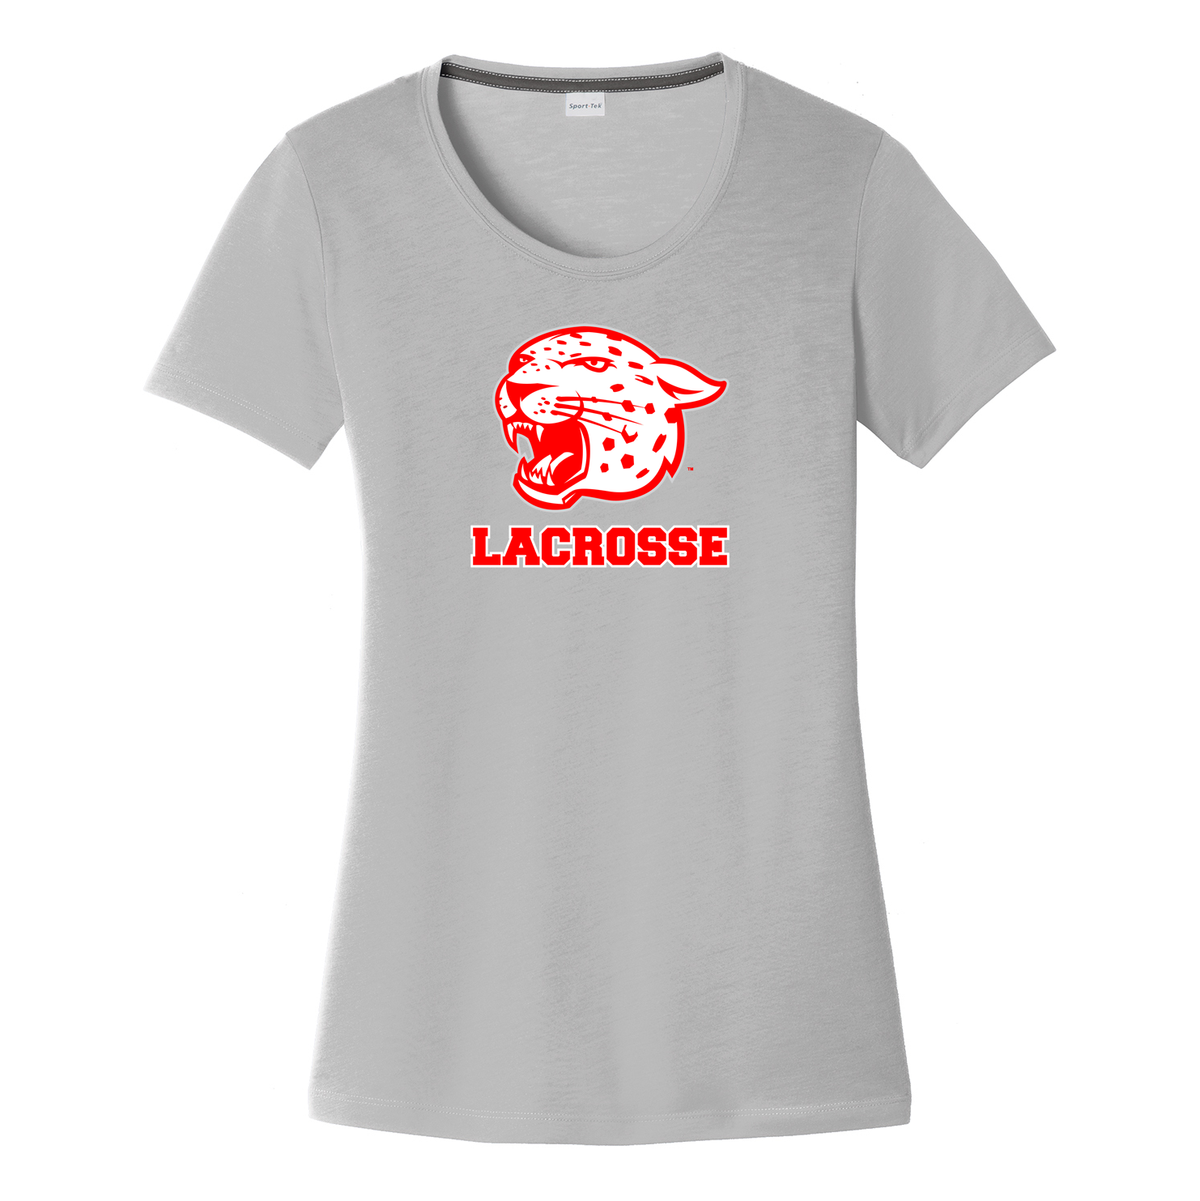 East Lacrosse Women's CottonTouch Performance T-Shirt